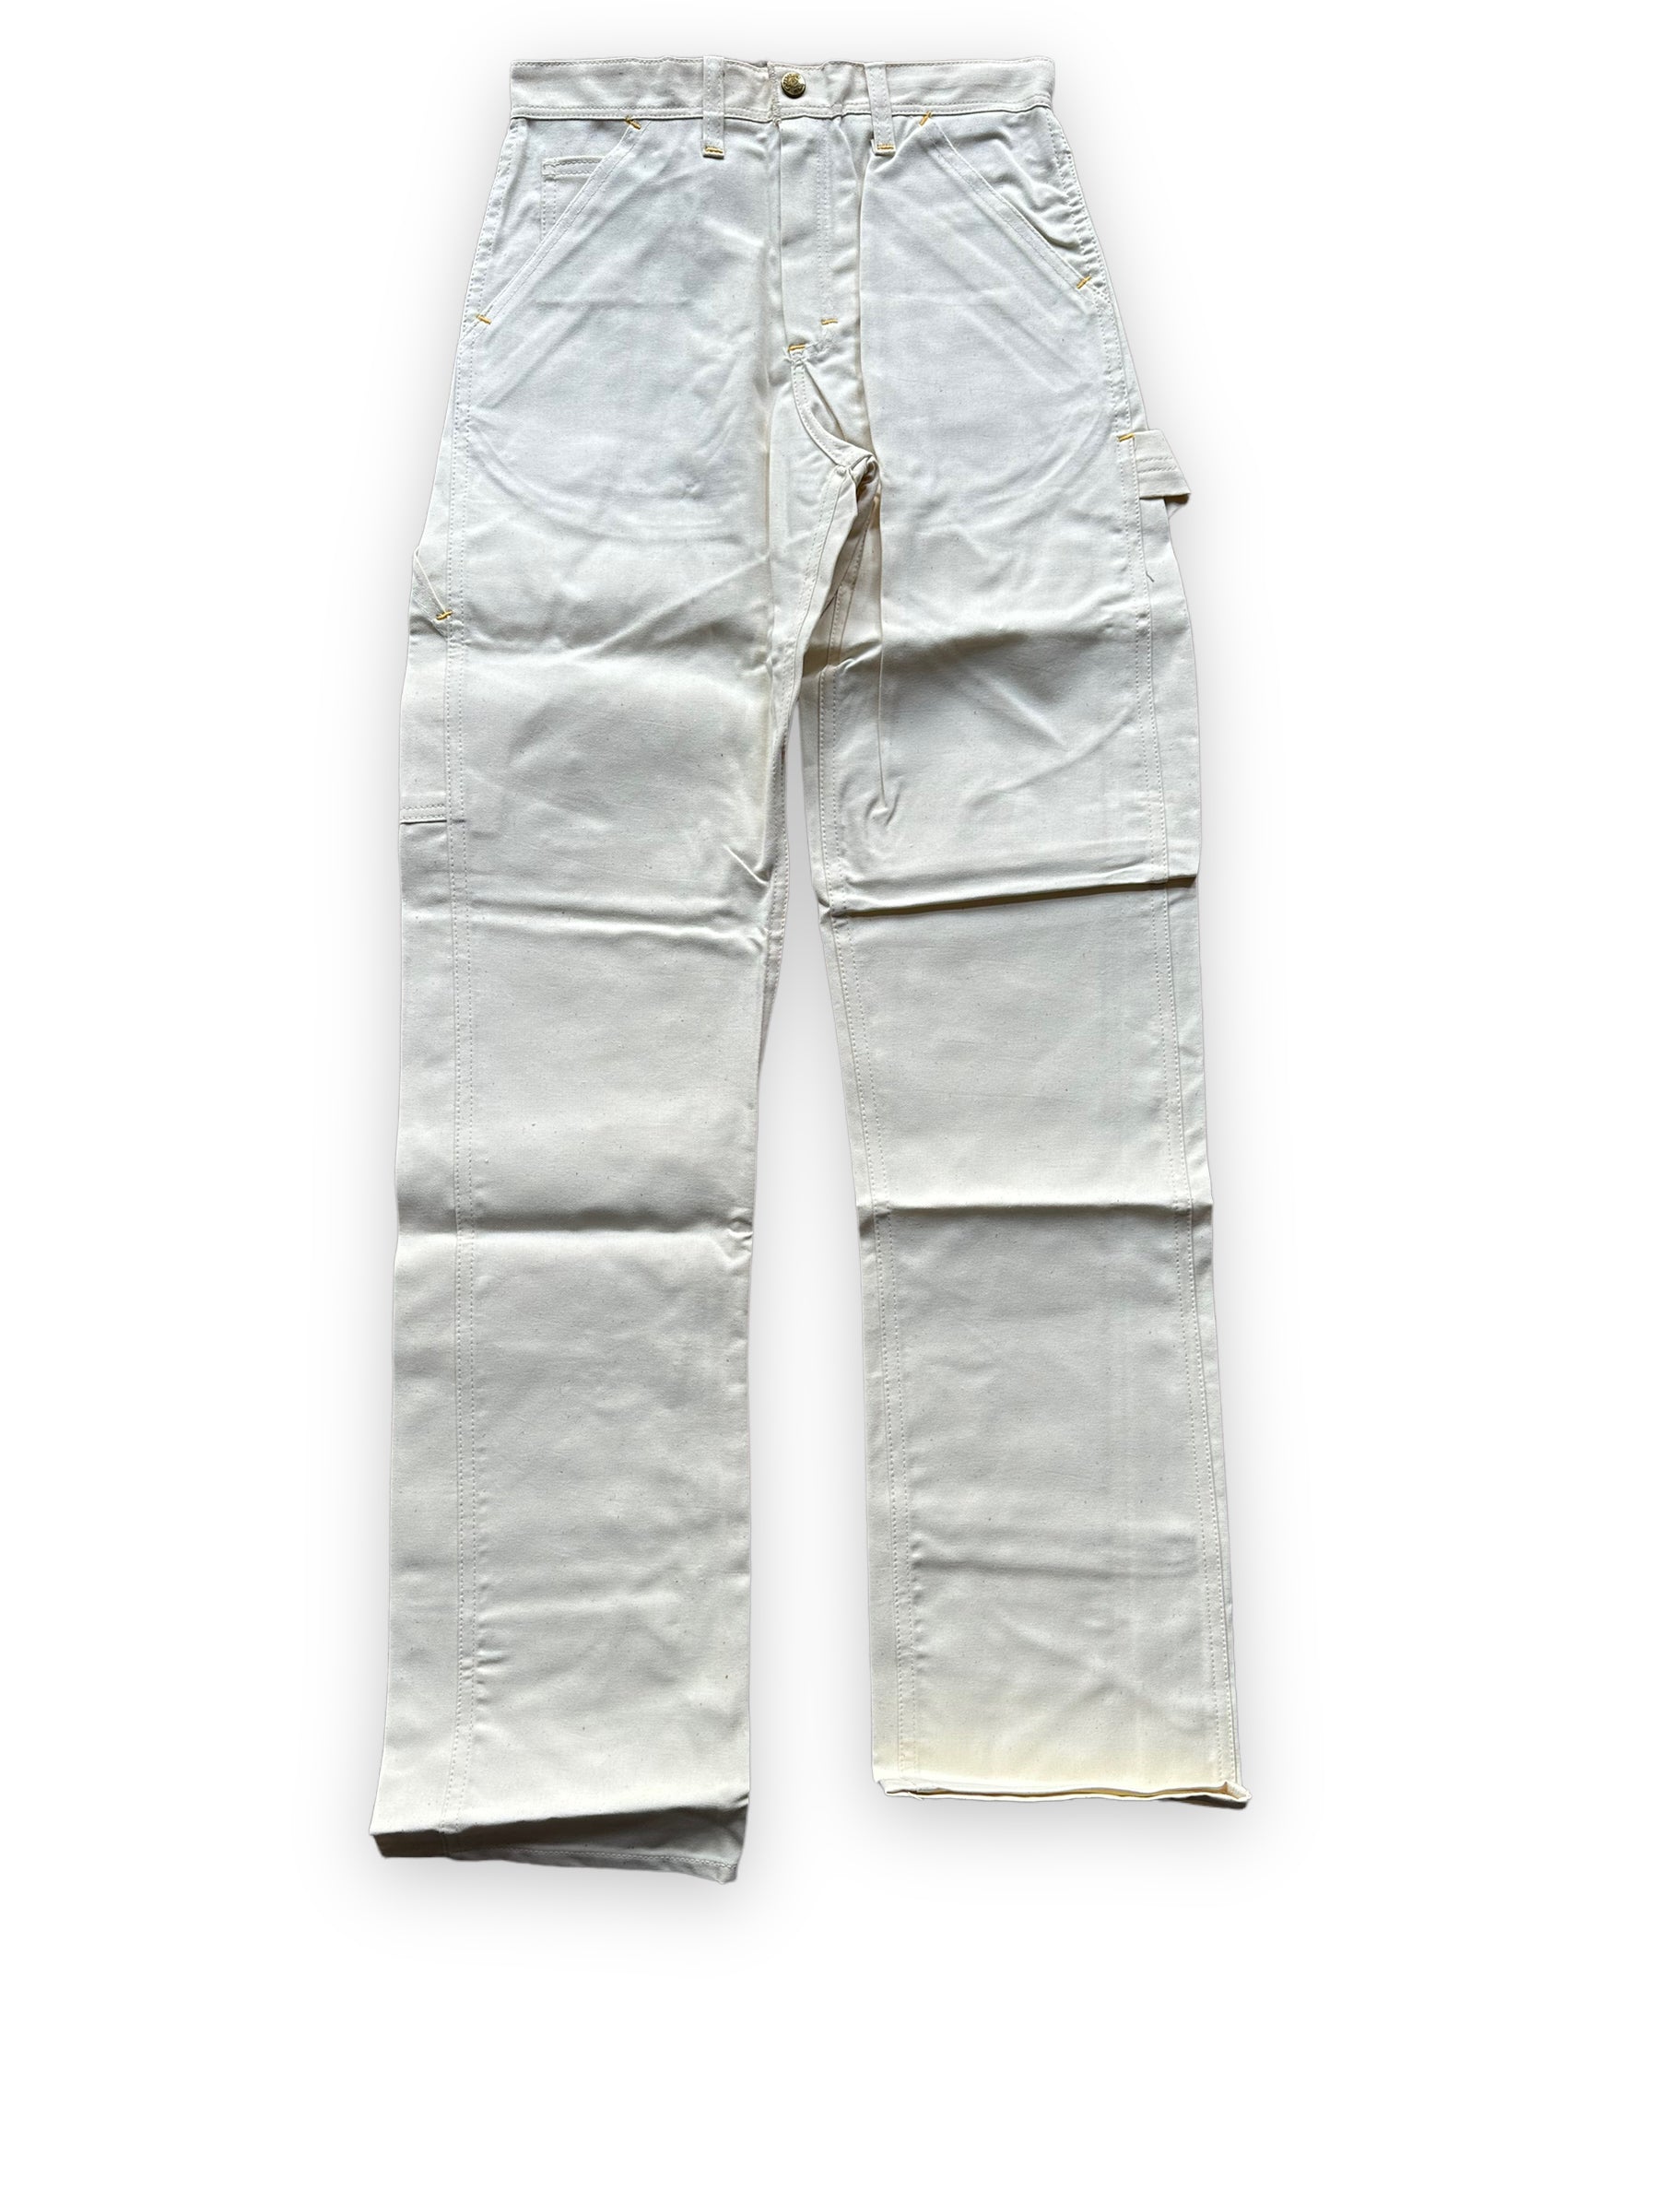 NOS Vintage Carter's Ecru Painters Pants W26 L34